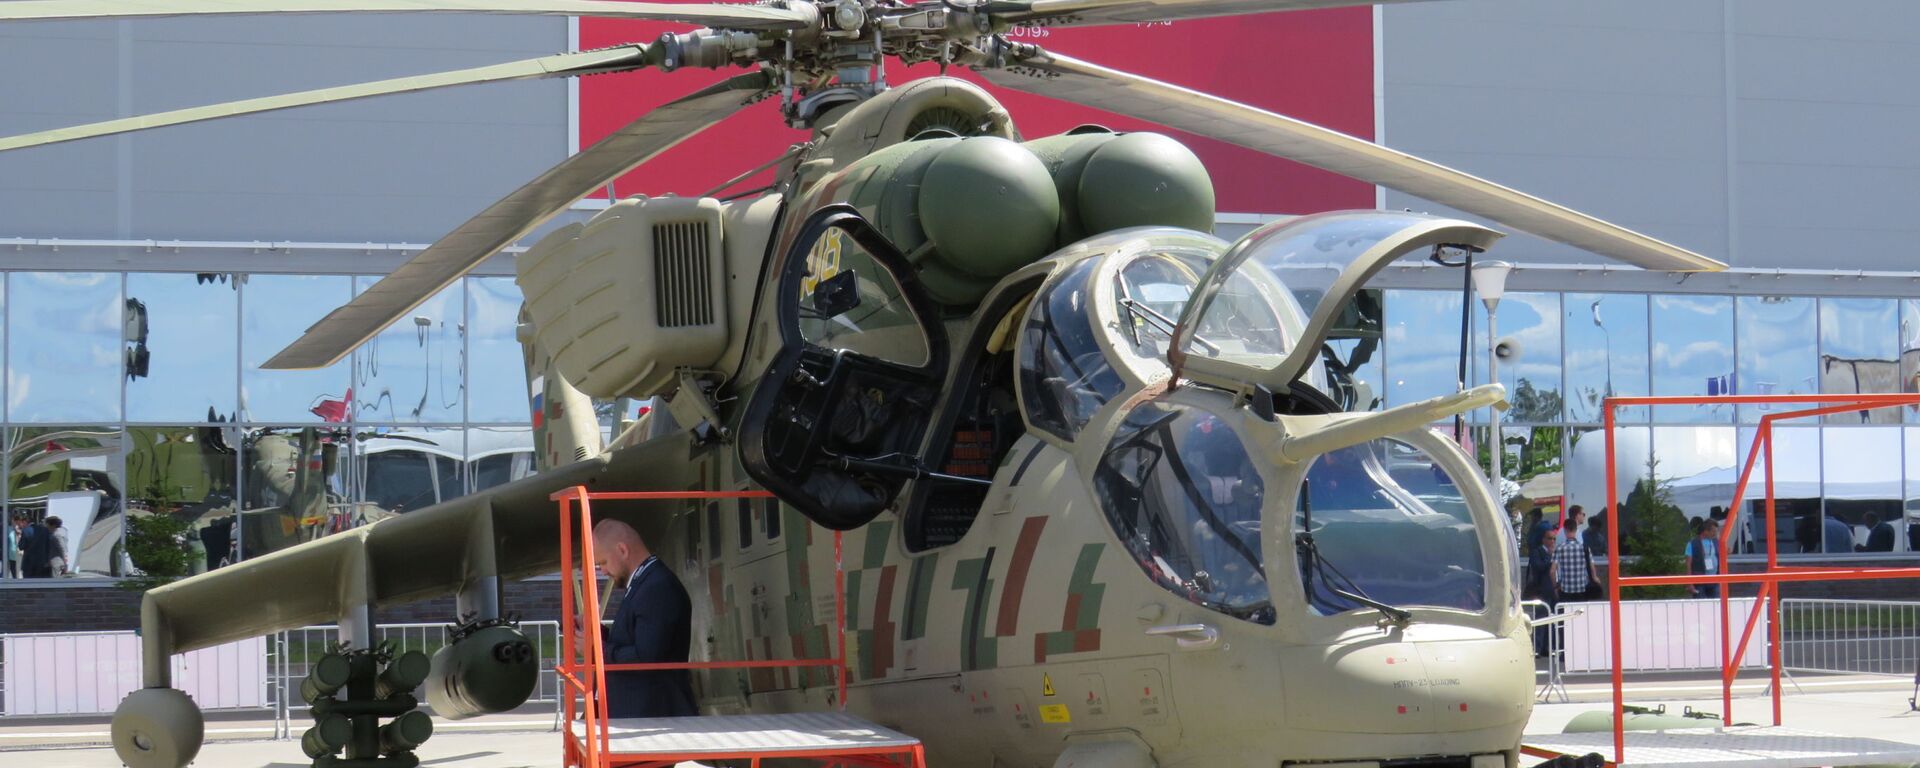 Máy bay trực thăng Mi-35P tại MAKS-2021 - Sputnik Việt Nam, 1920, 27.07.2021